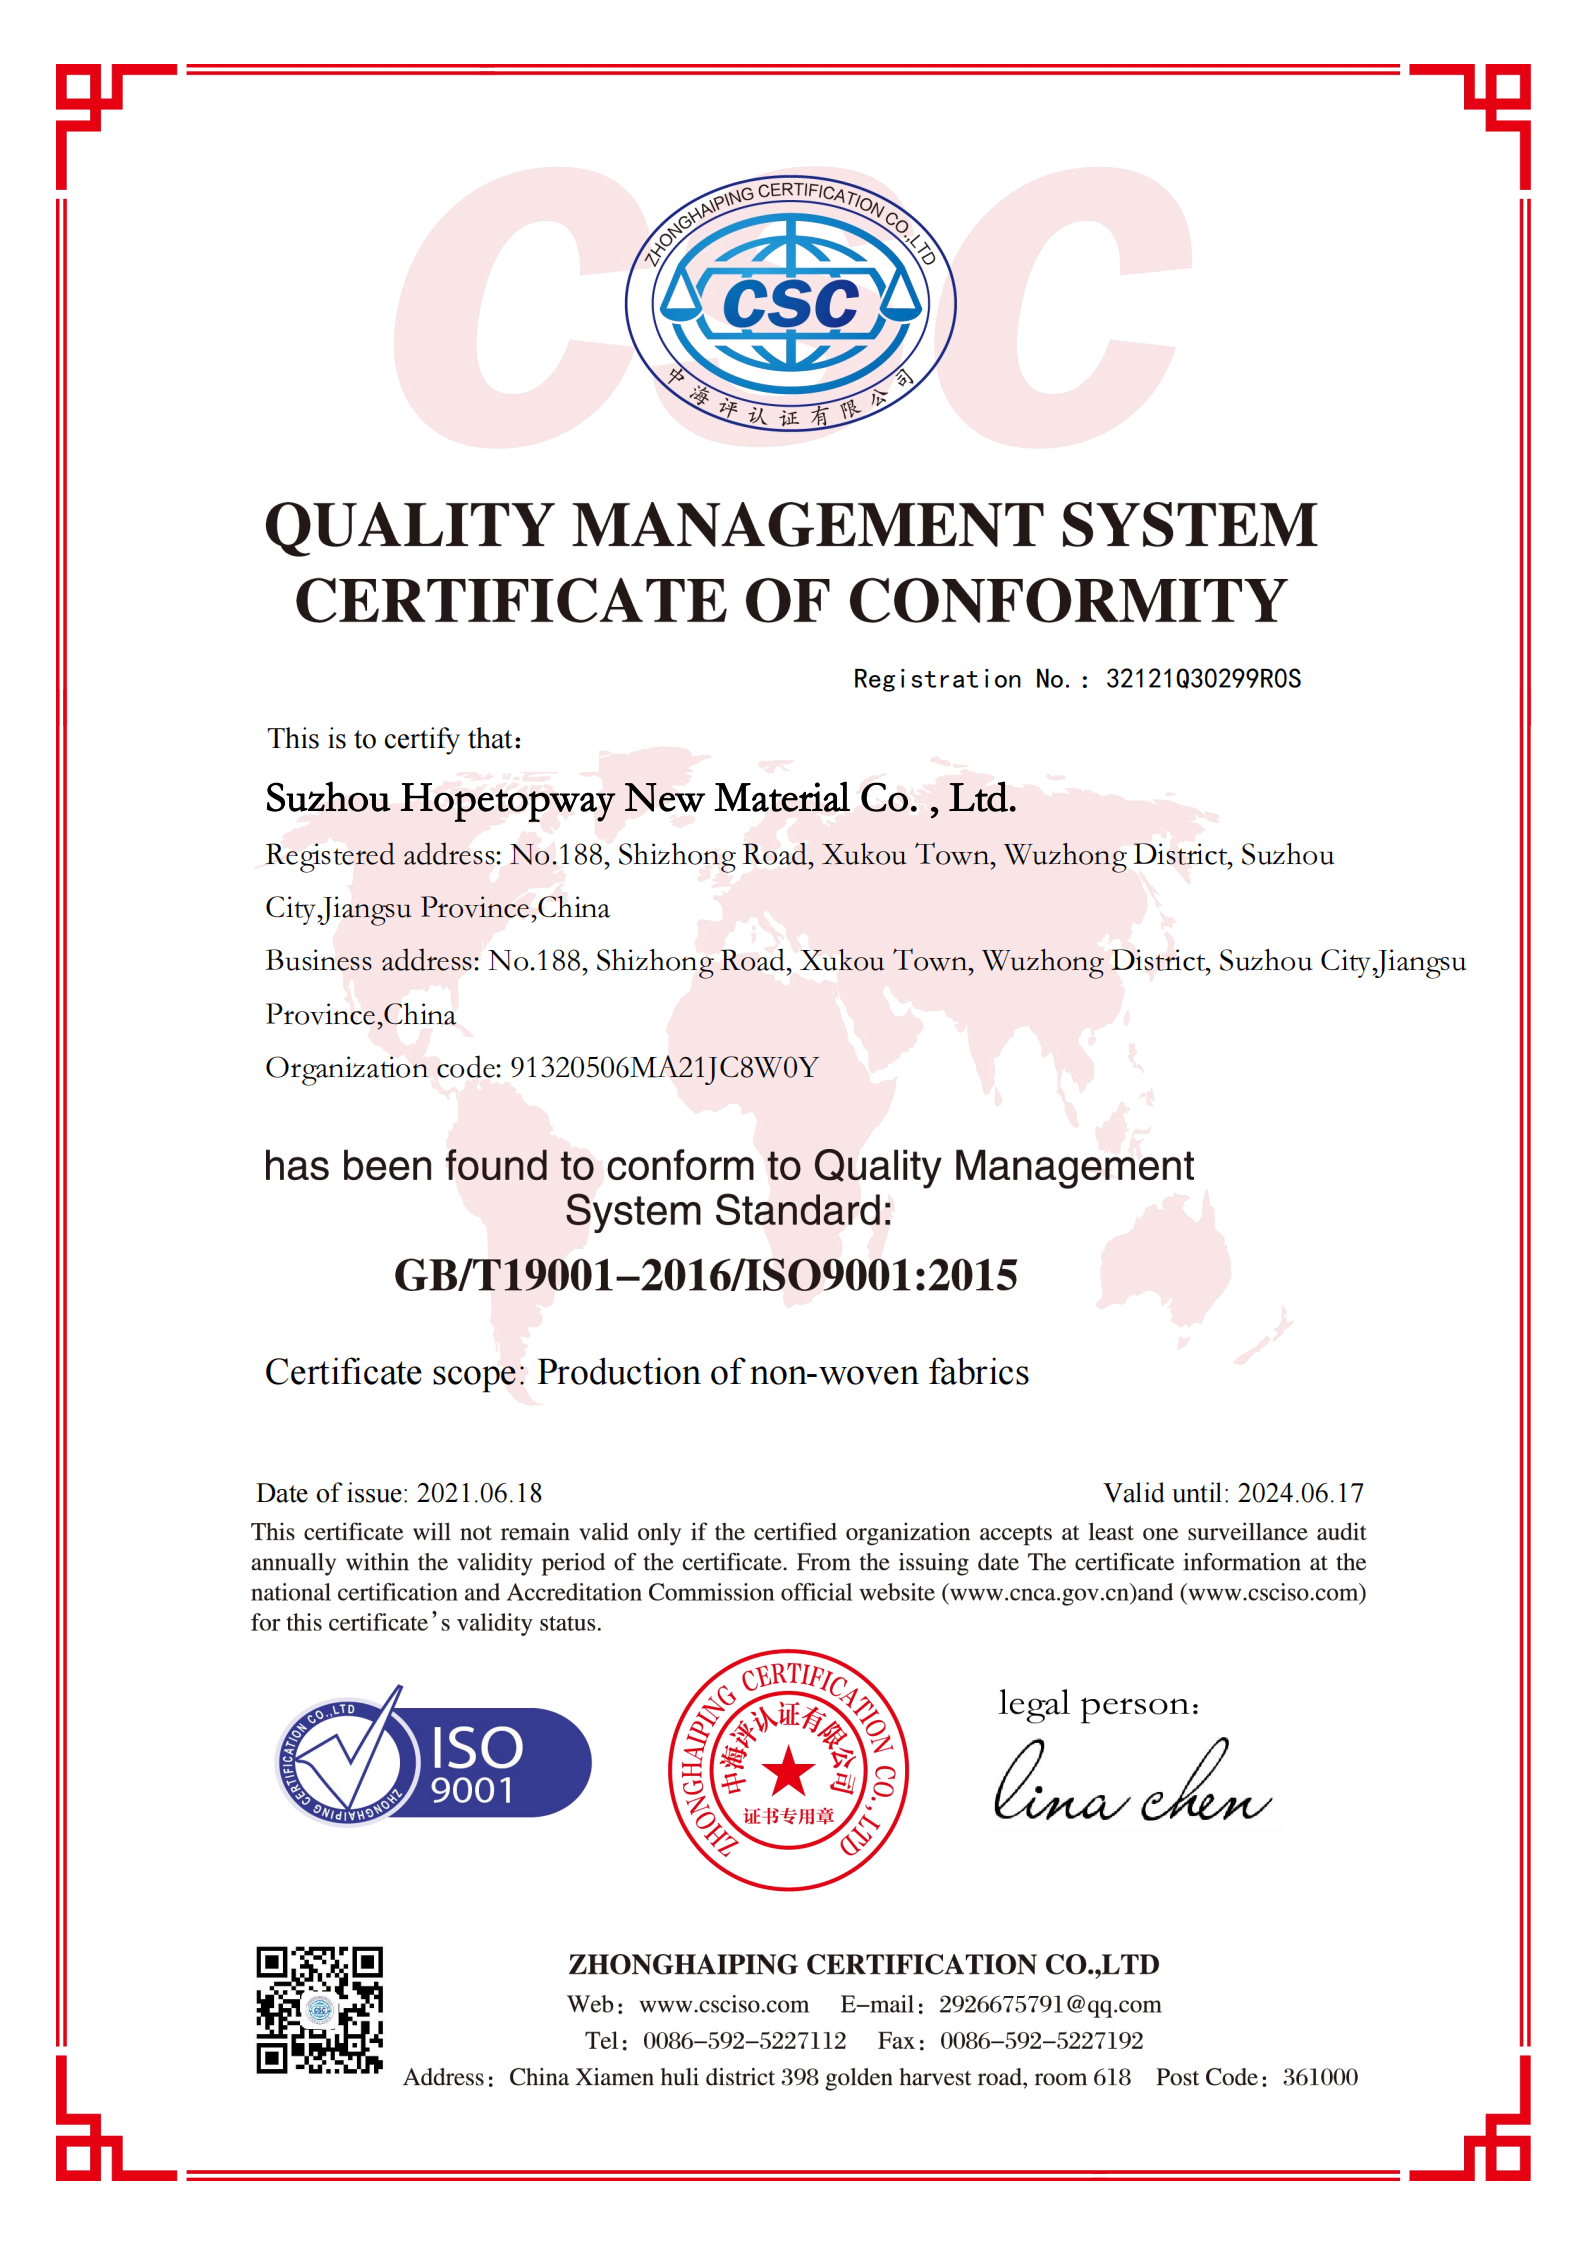 ISO9001 of Hopetopway